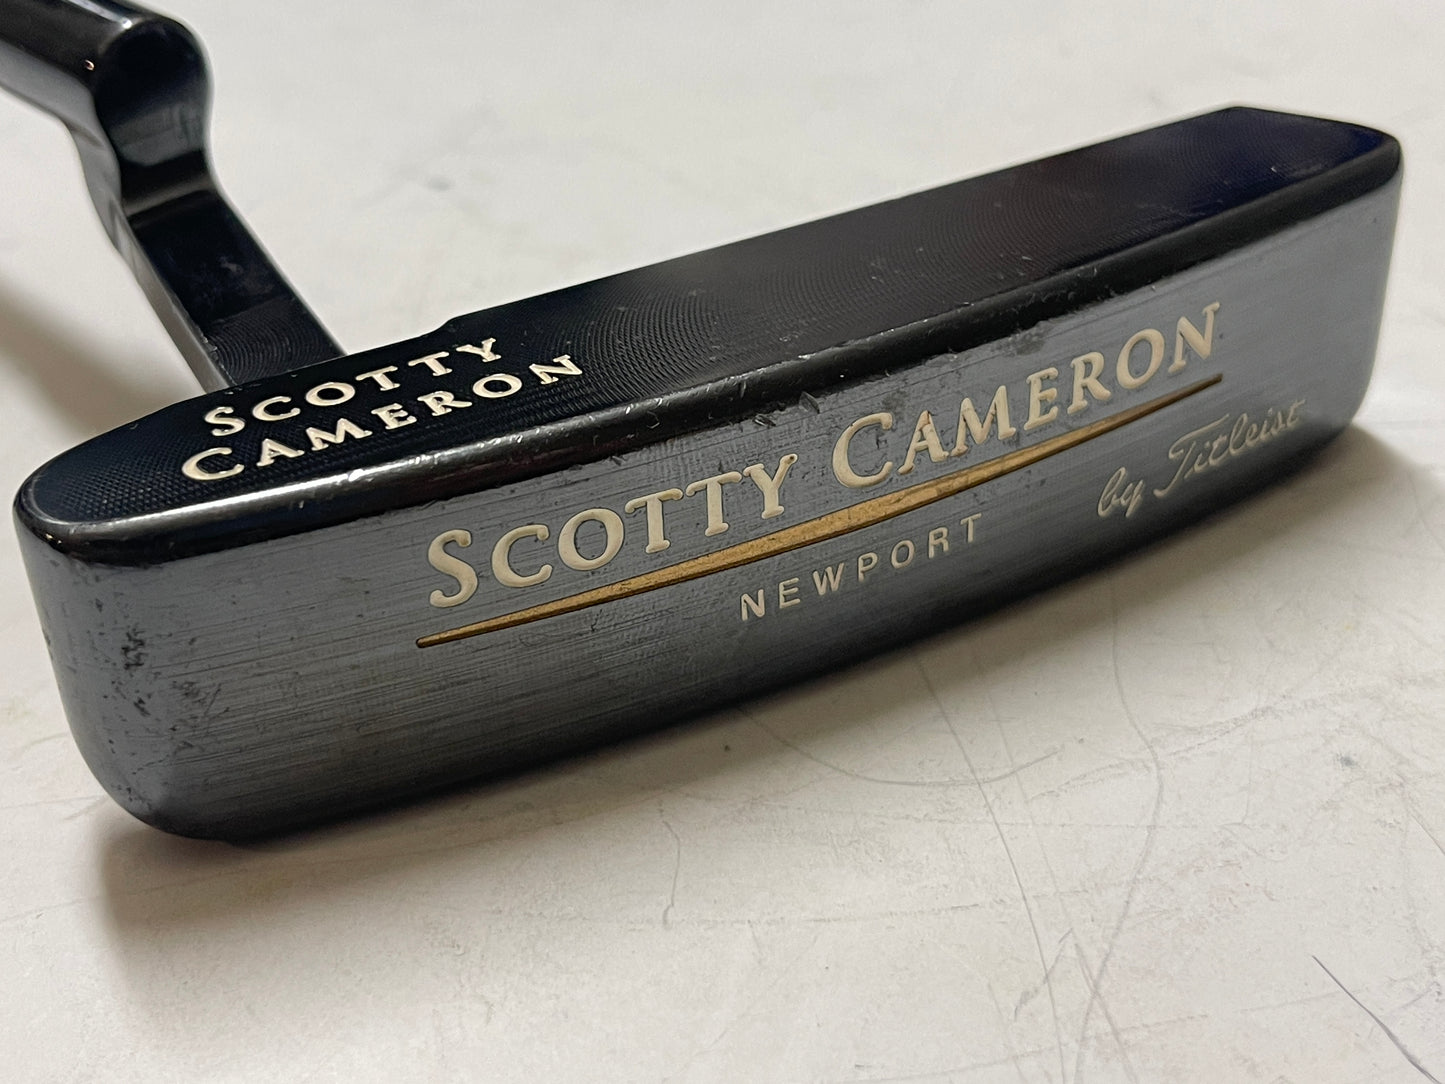 Lefty Scotty Cameron Classics Newport 34” Putter Titleist